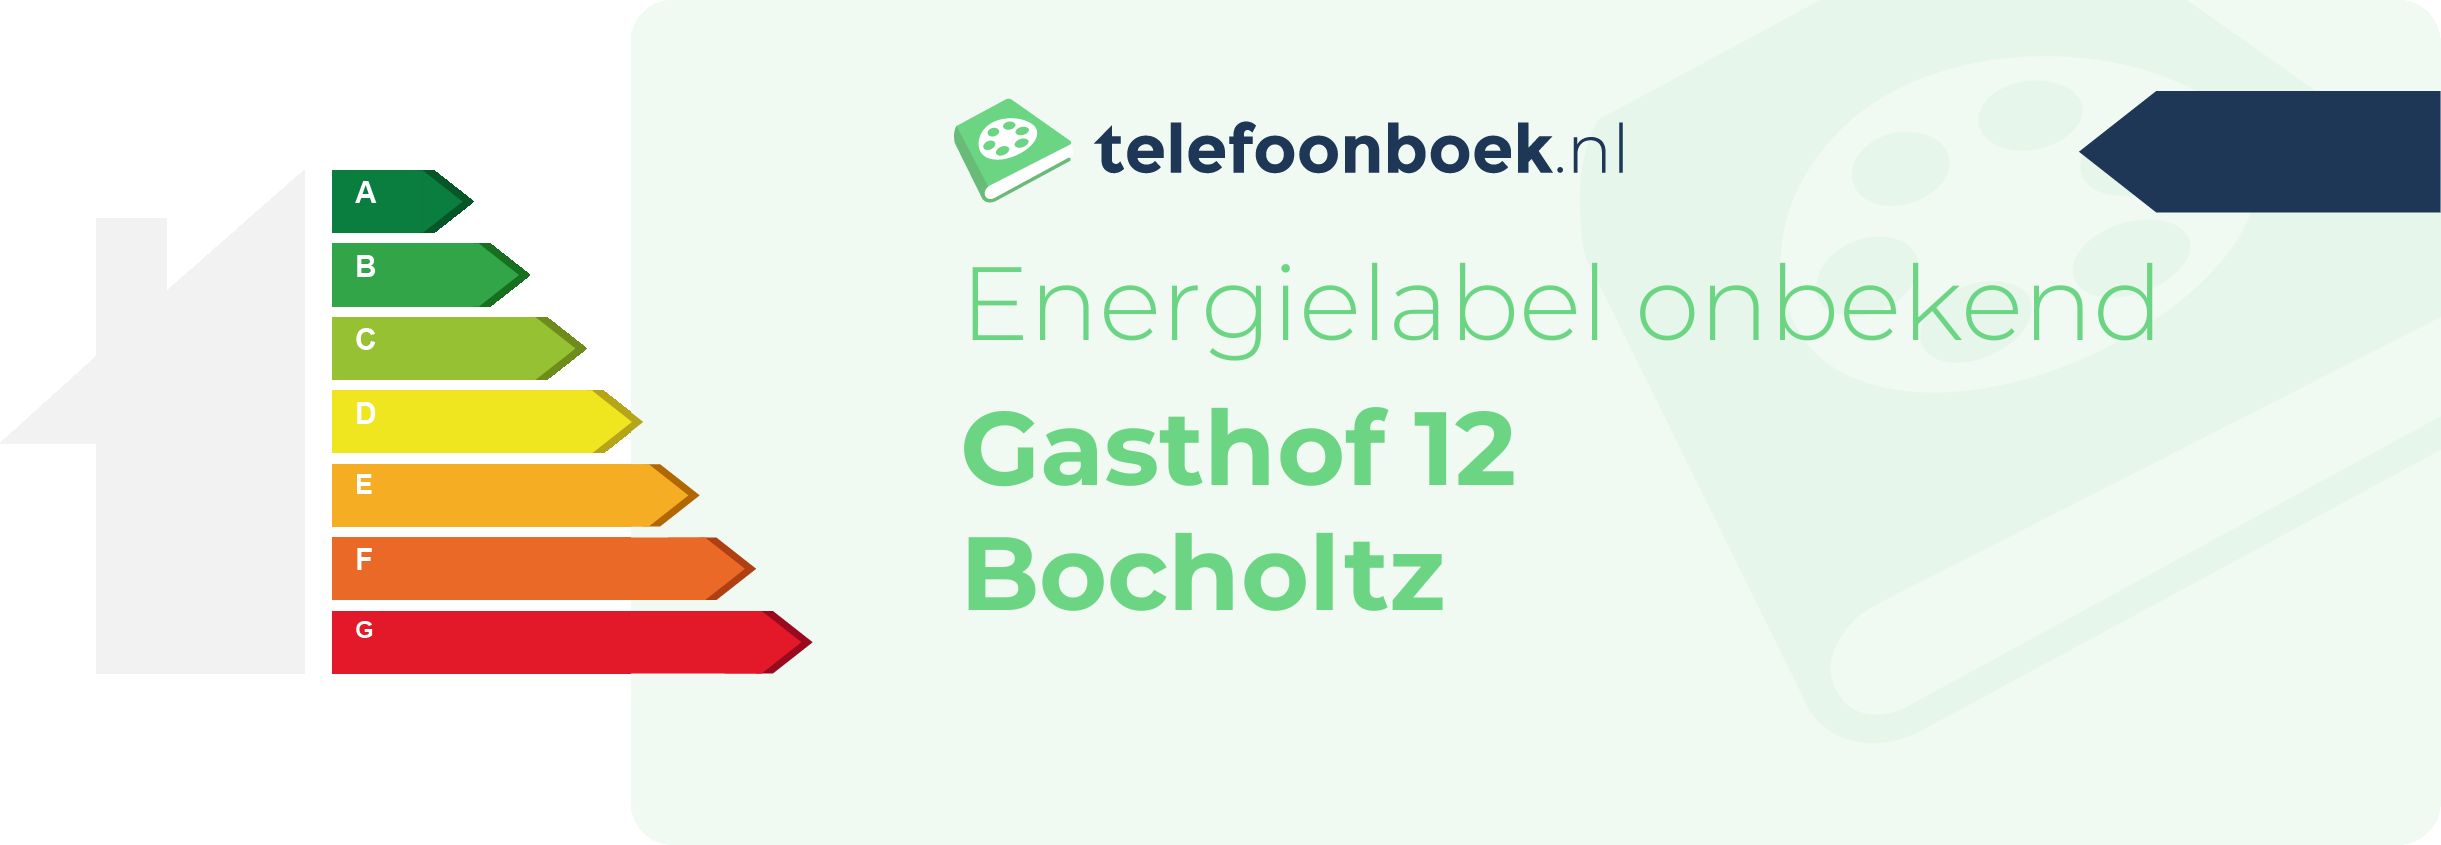 Energielabel Gasthof 12 Bocholtz